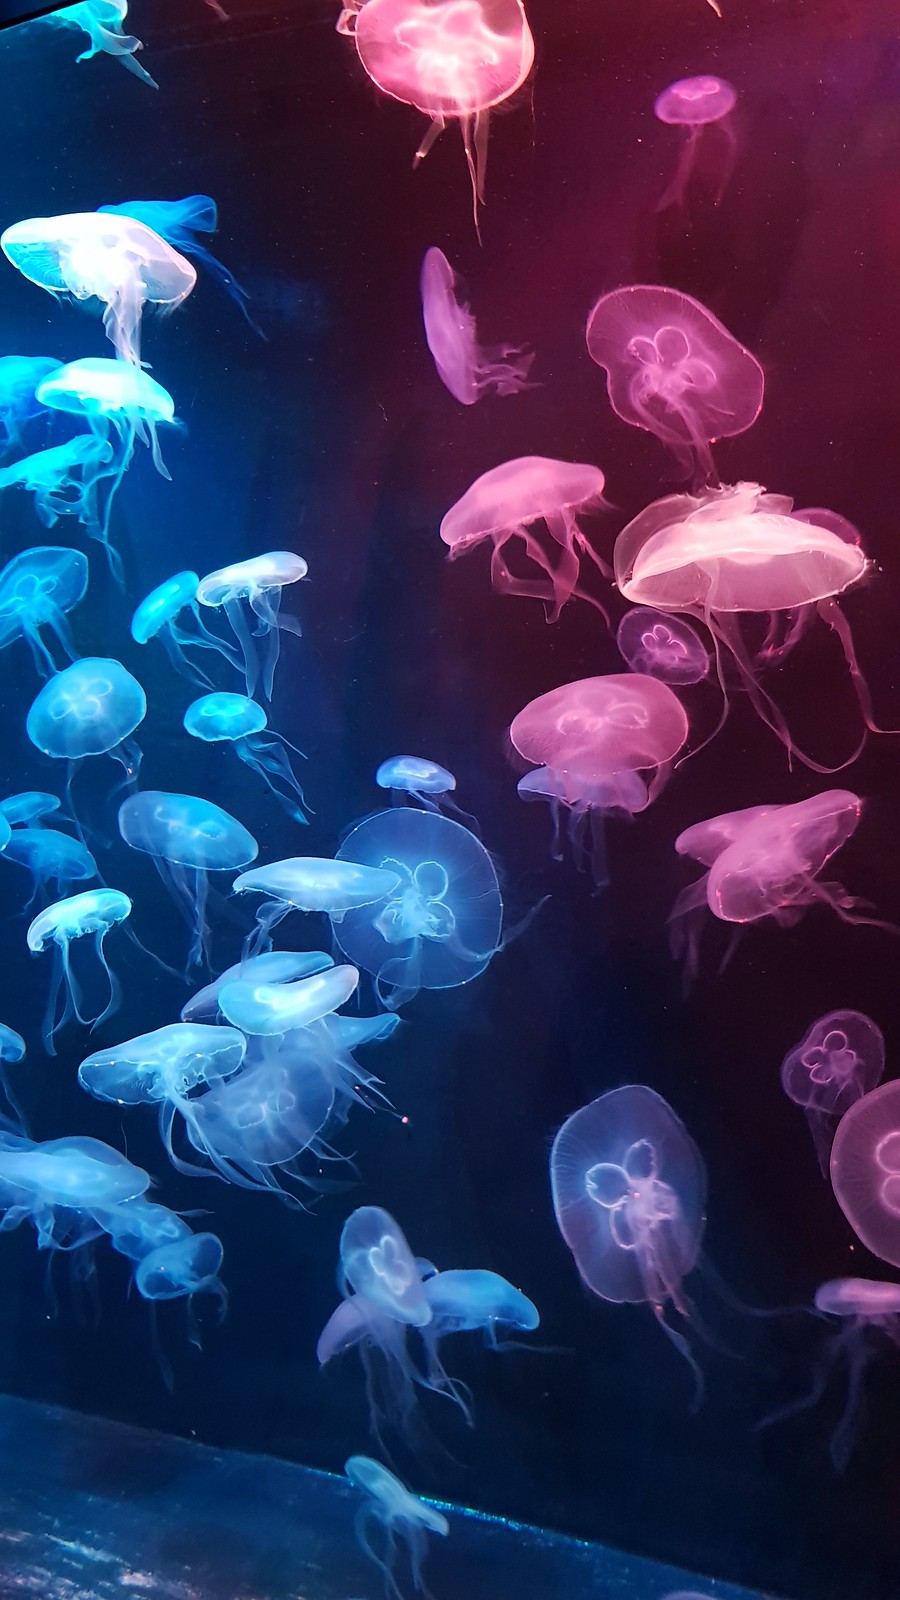 9. Jellyfish exhibit